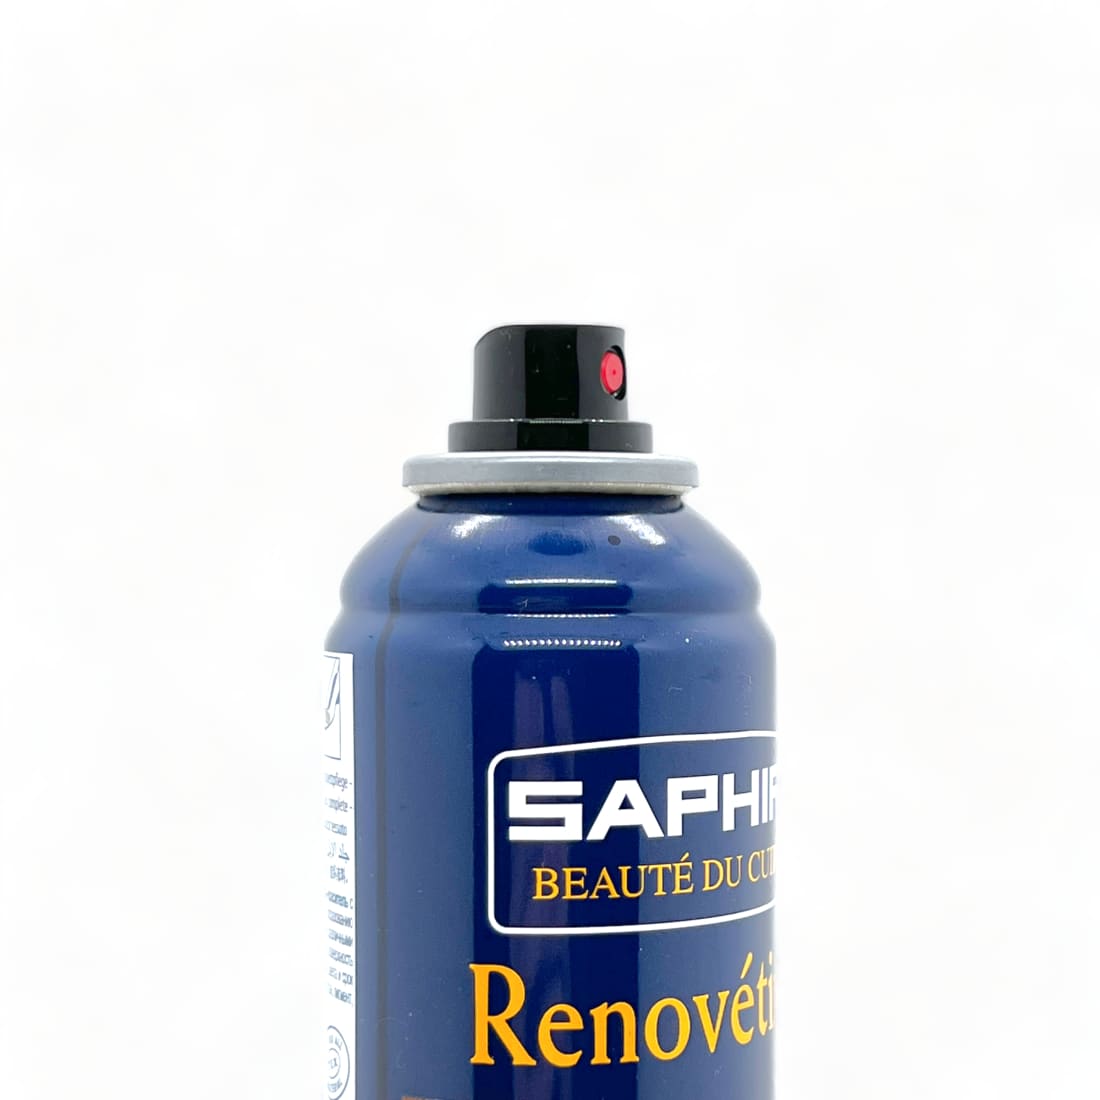 Spray Rénovétine Daim Fauve - Saphir - 200 ml - Accessoires